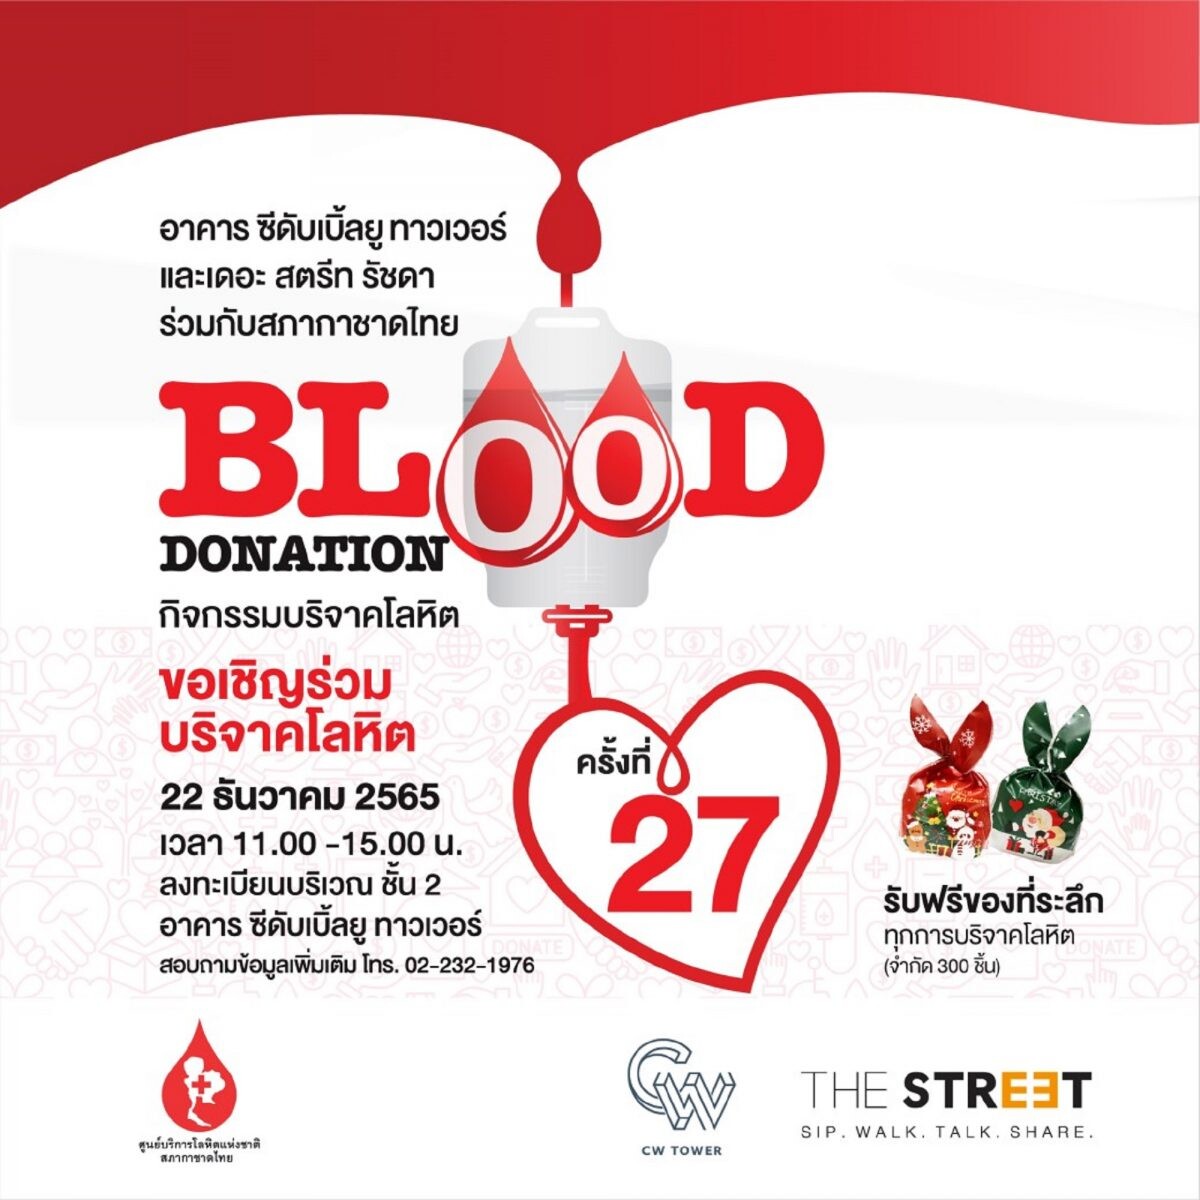 "อาคาร ซีดับเบิ้ลยู ทาวเวอร์" จับมือ "เดอะ สตรีท รัชดา" ชวนคนไทยร่วมบริจาคโลหิตในกิจกรรม "Blood Donation" ครั้งที่ 27